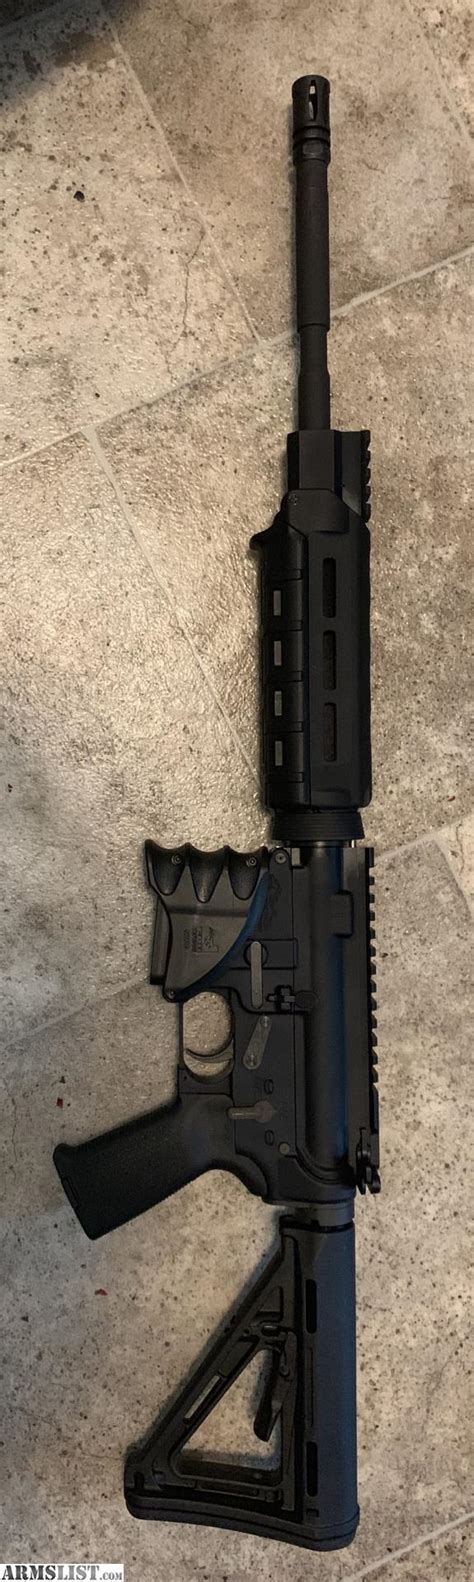 Armslist For Sale M4 Carbine